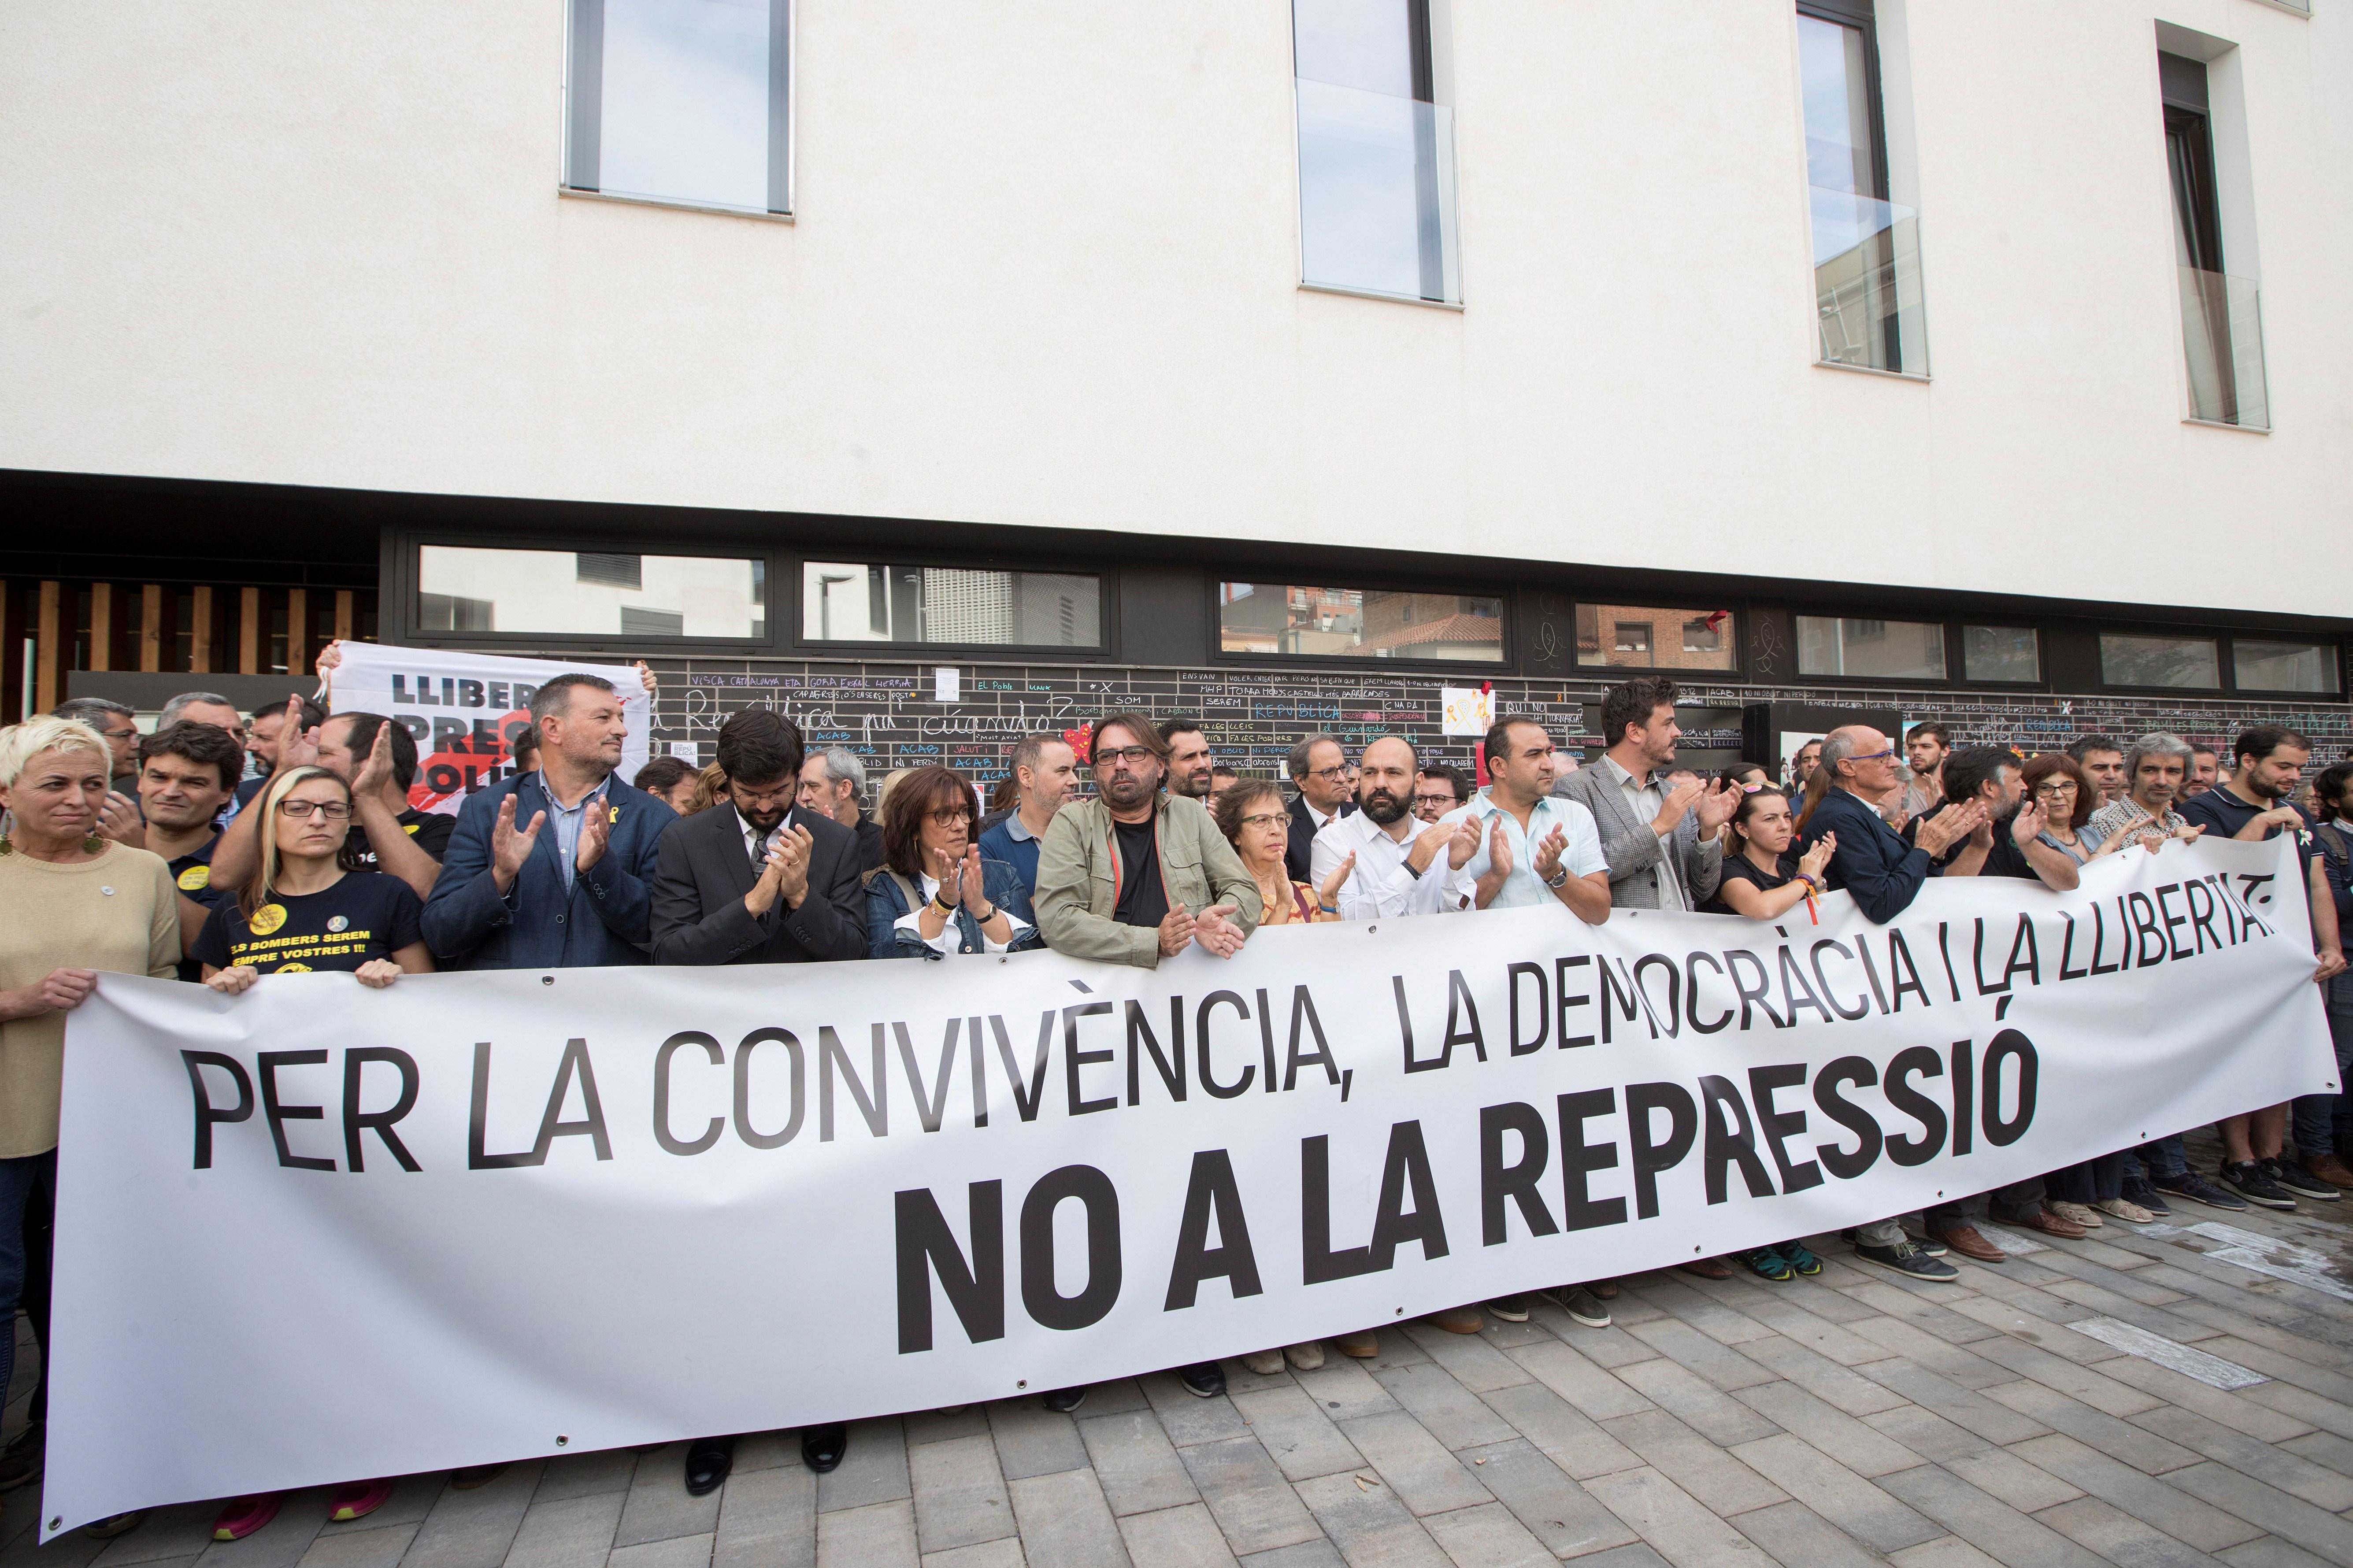 Sindicats, entitats i polítics s'uneixen per denunciar la repressió de l'1-O